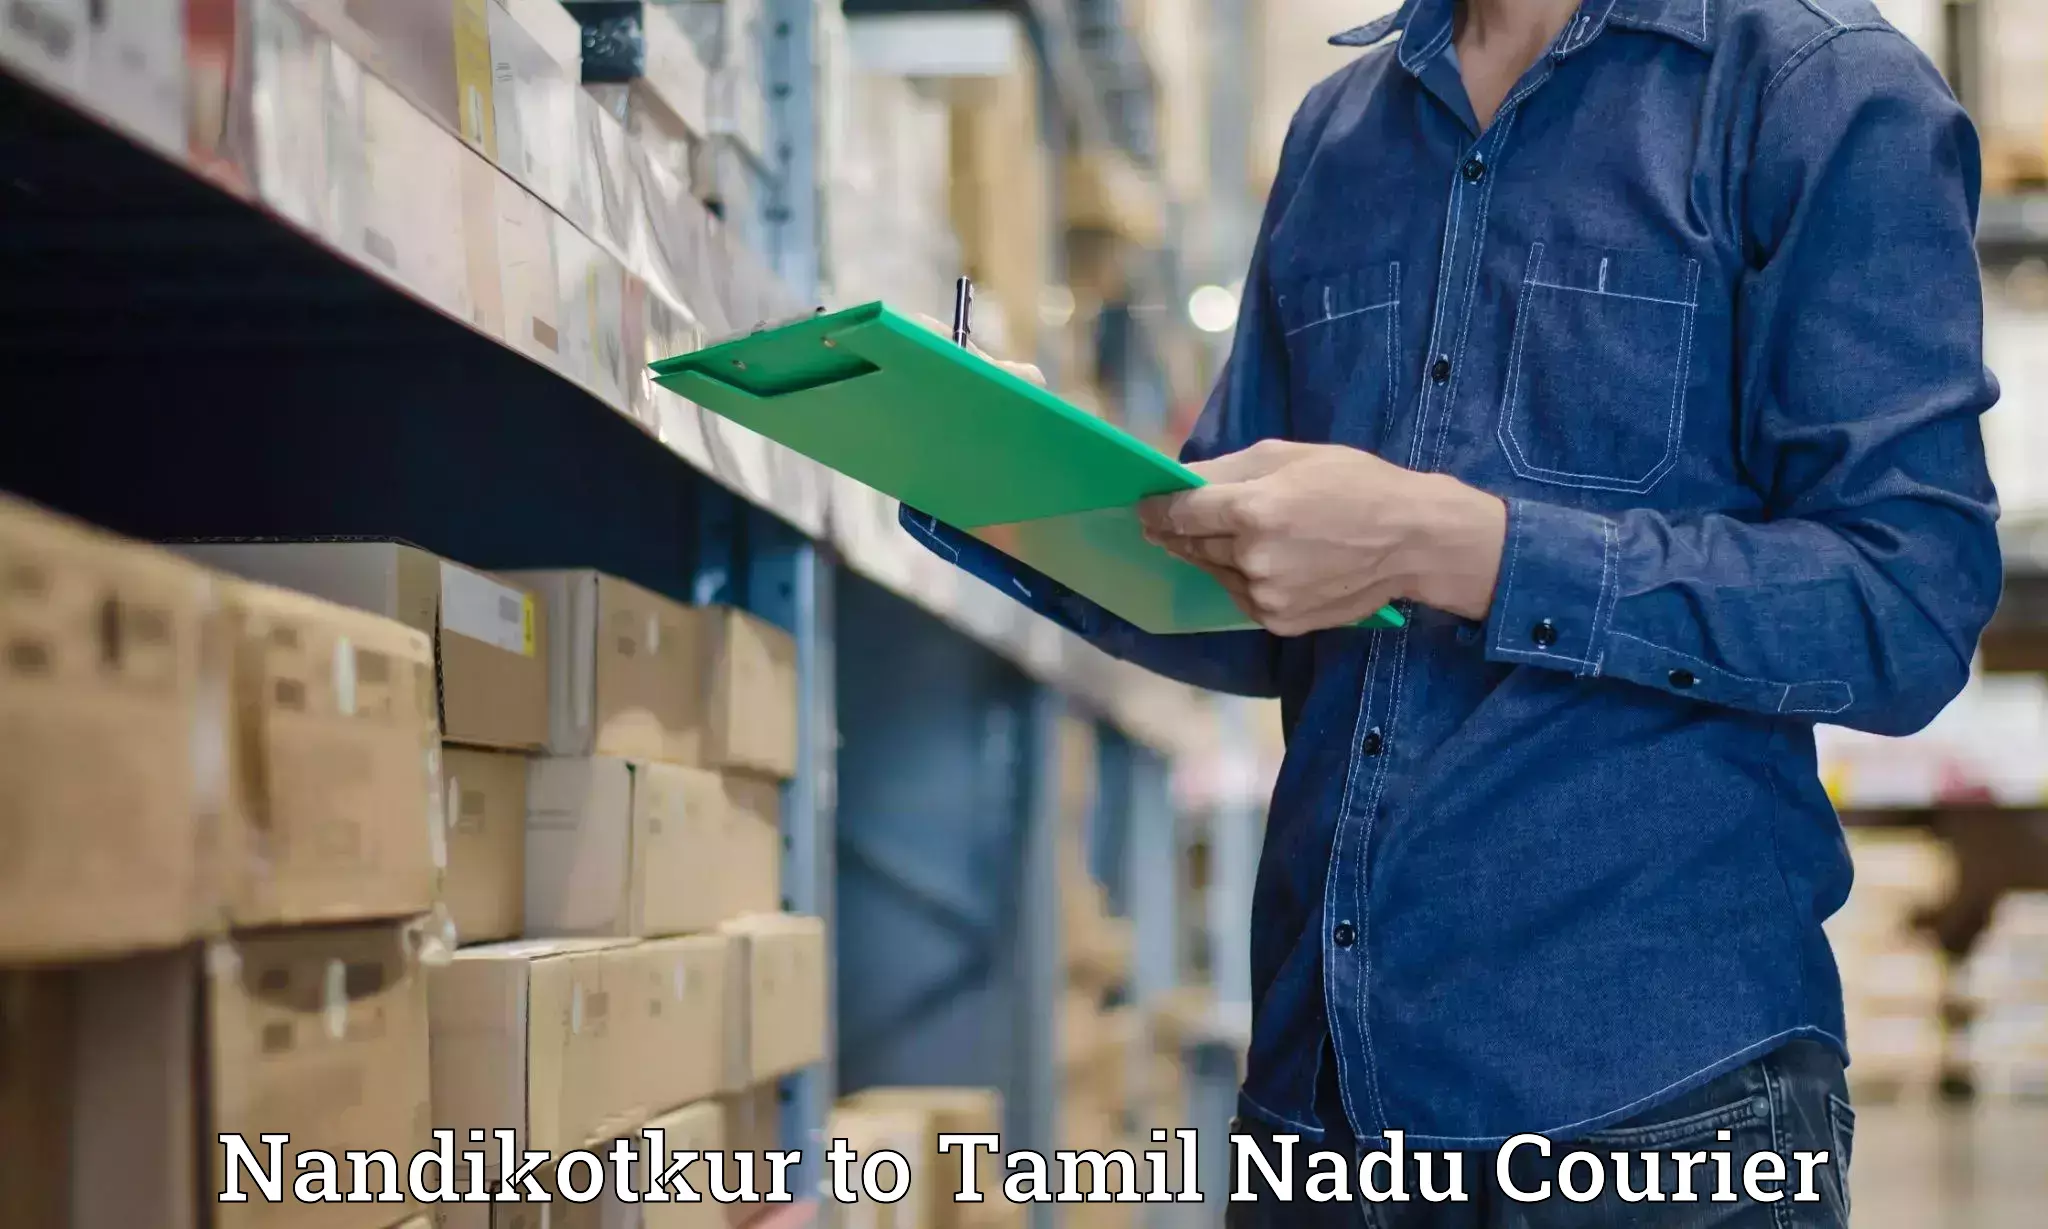 High-speed parcel service Nandikotkur to Ramanathapuram